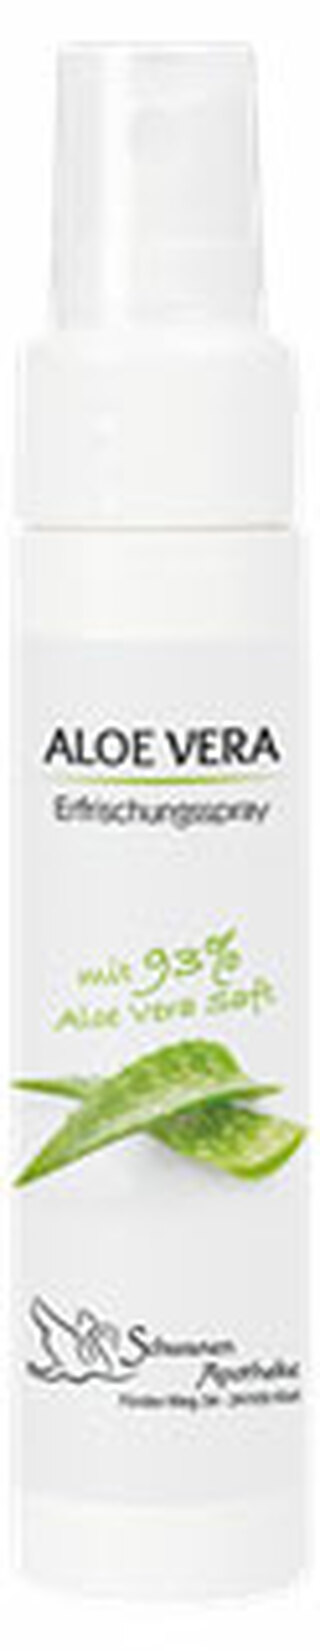 Erfrischungsspray Aloe Vera